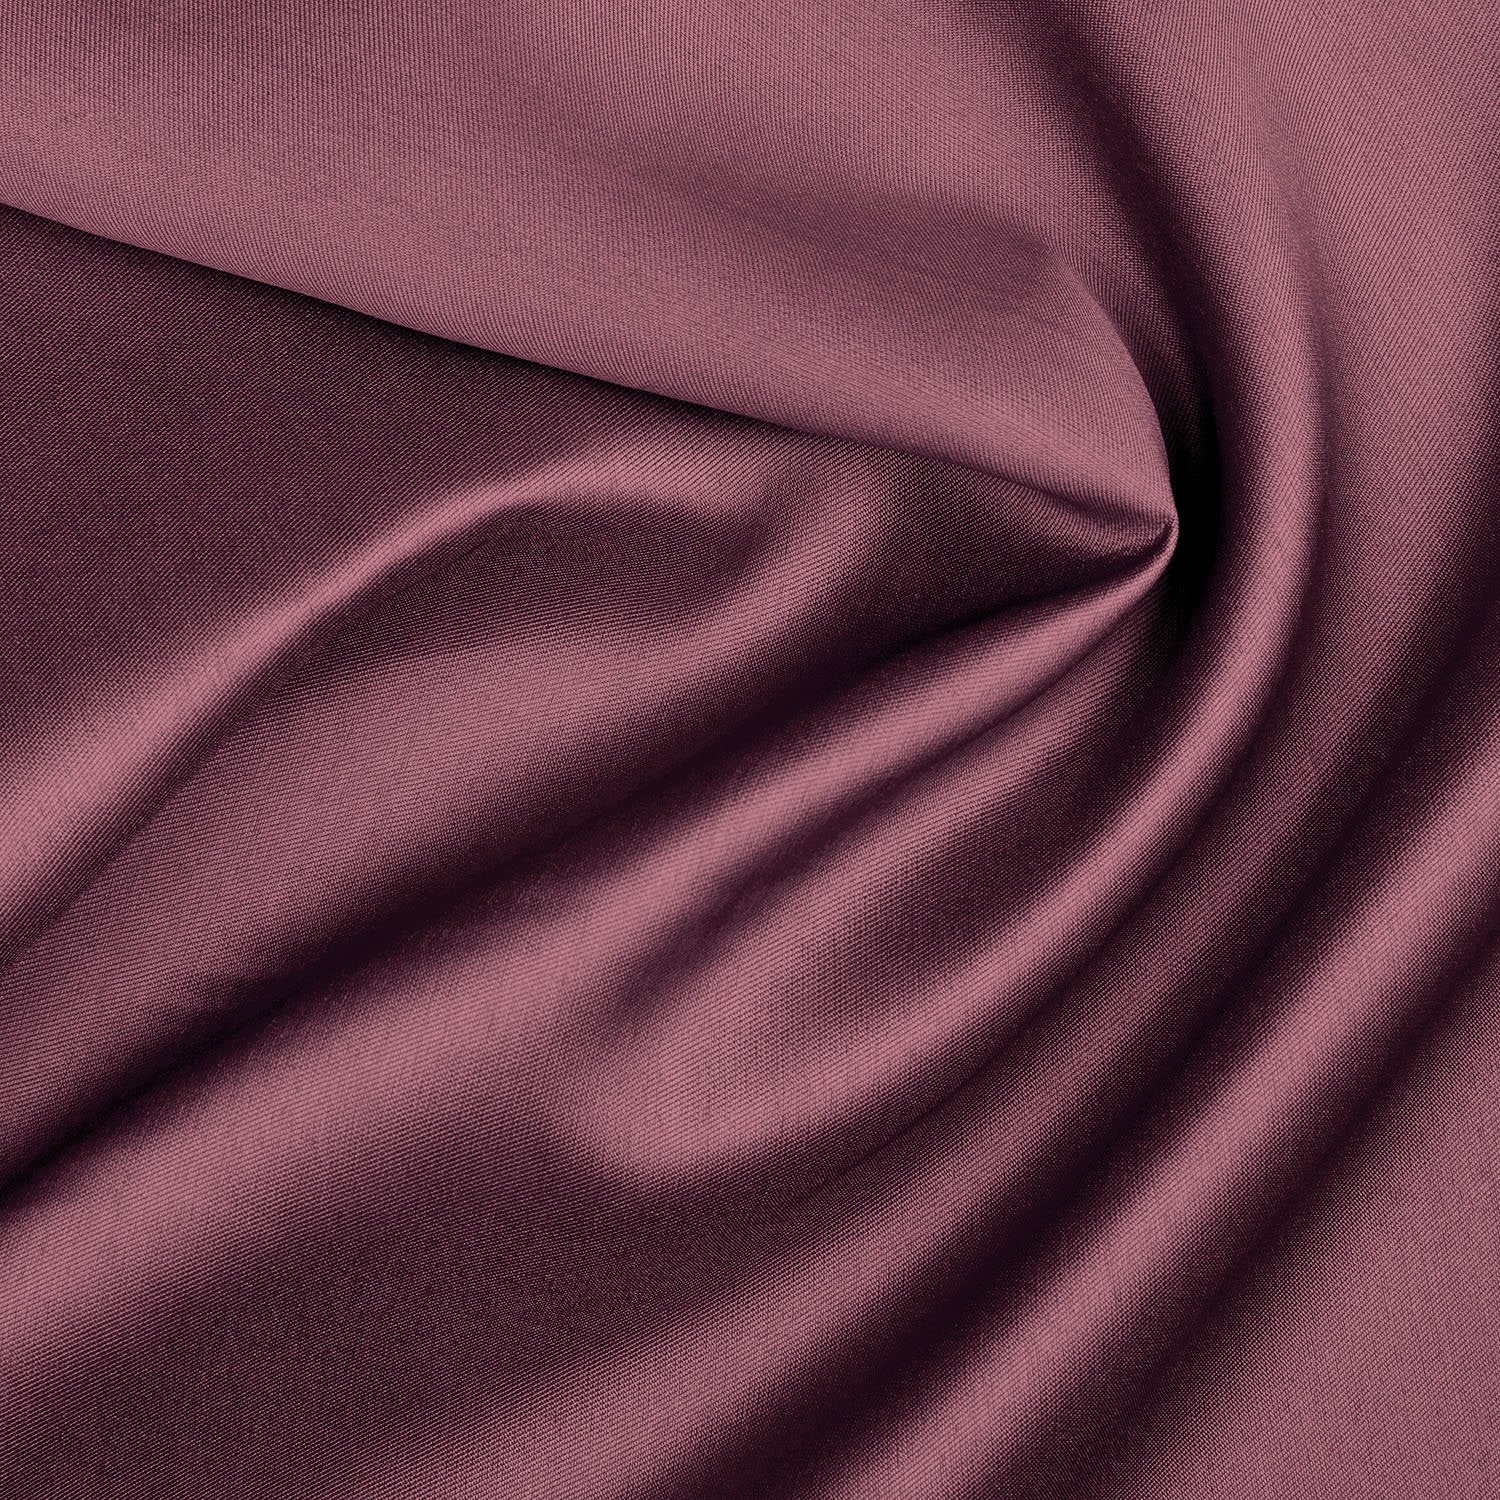 MIKADO SATIN TWILL| 9937 | Wholesale Fabrics from $13.99 USD